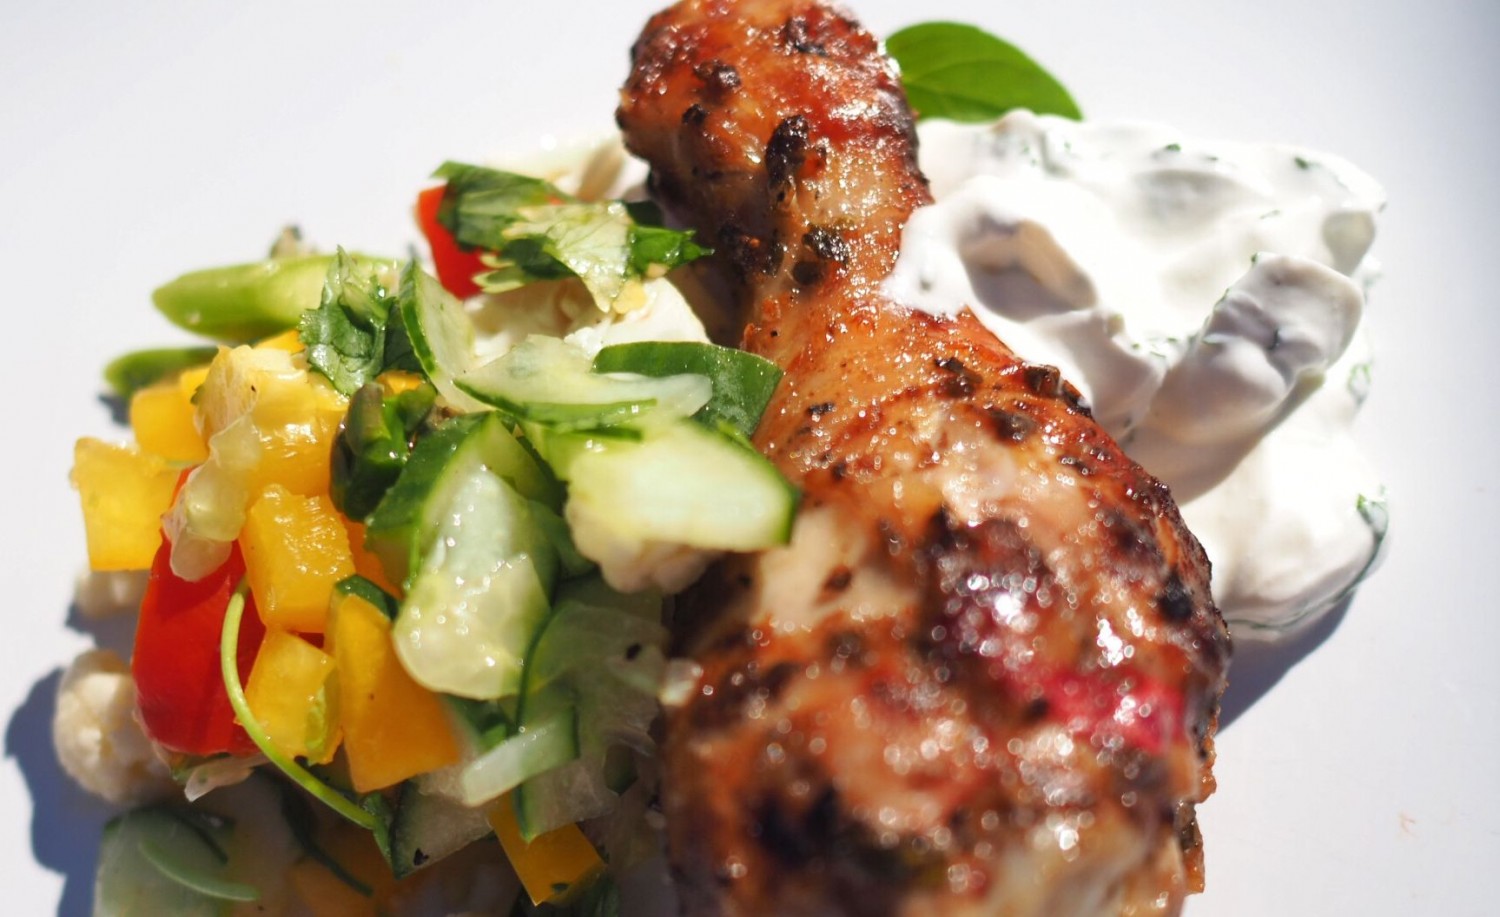 Marinerede kyllingelår i grillmarinade med salat og creme fraiche-dressing